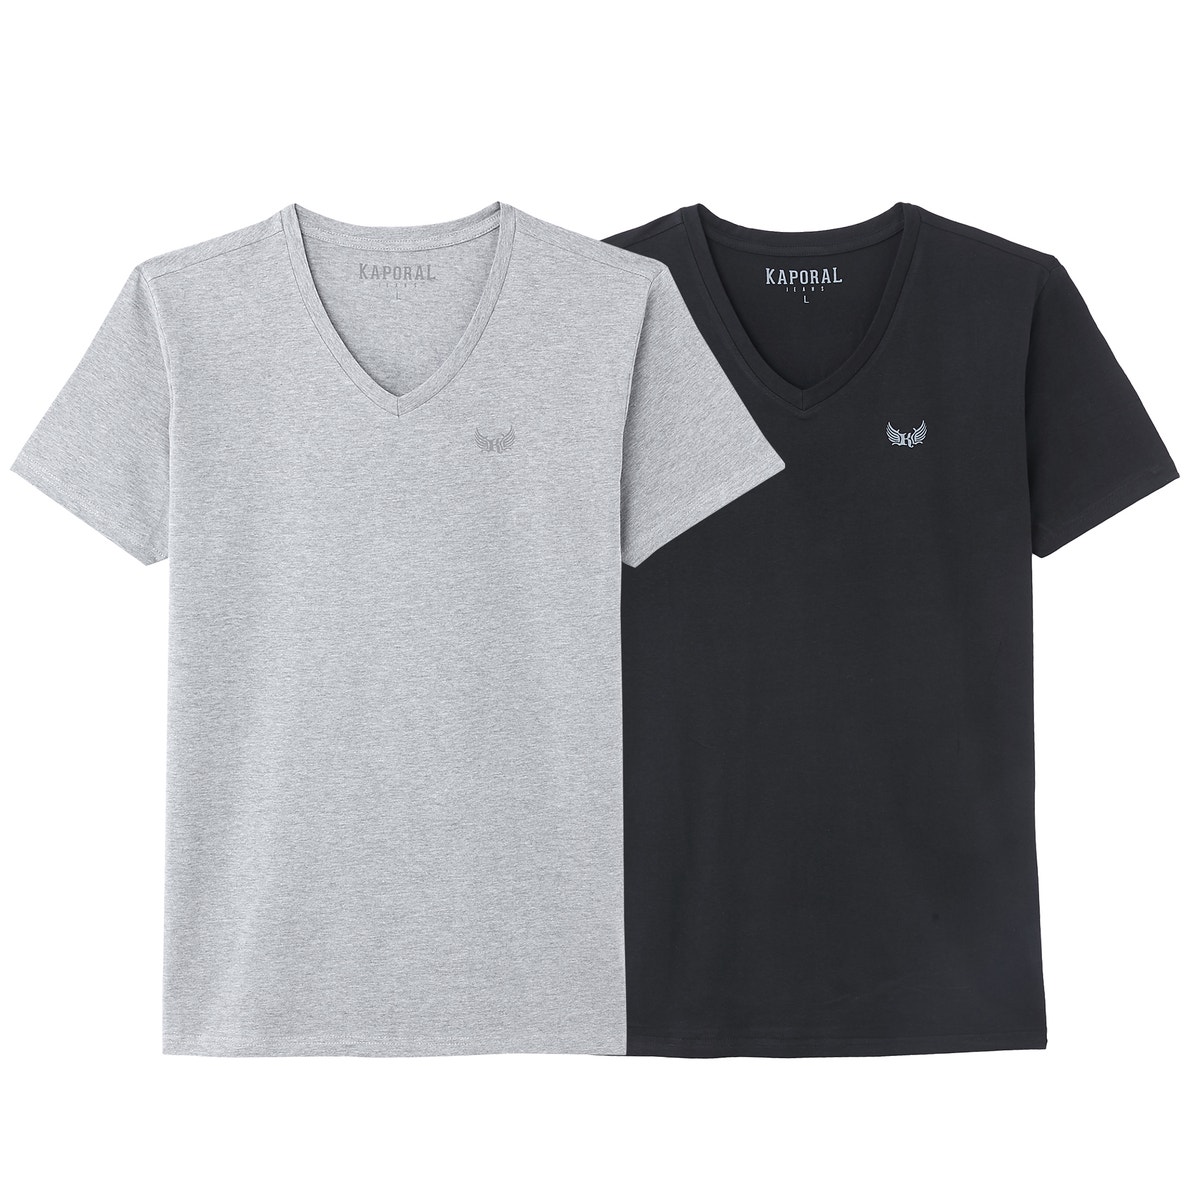 ΑΝΔΡΑΣ | Μπλούζες & Πουκάμισα | T-shirts Σετ 2 Τ-shirt με λαιμόκοψη V, Gift